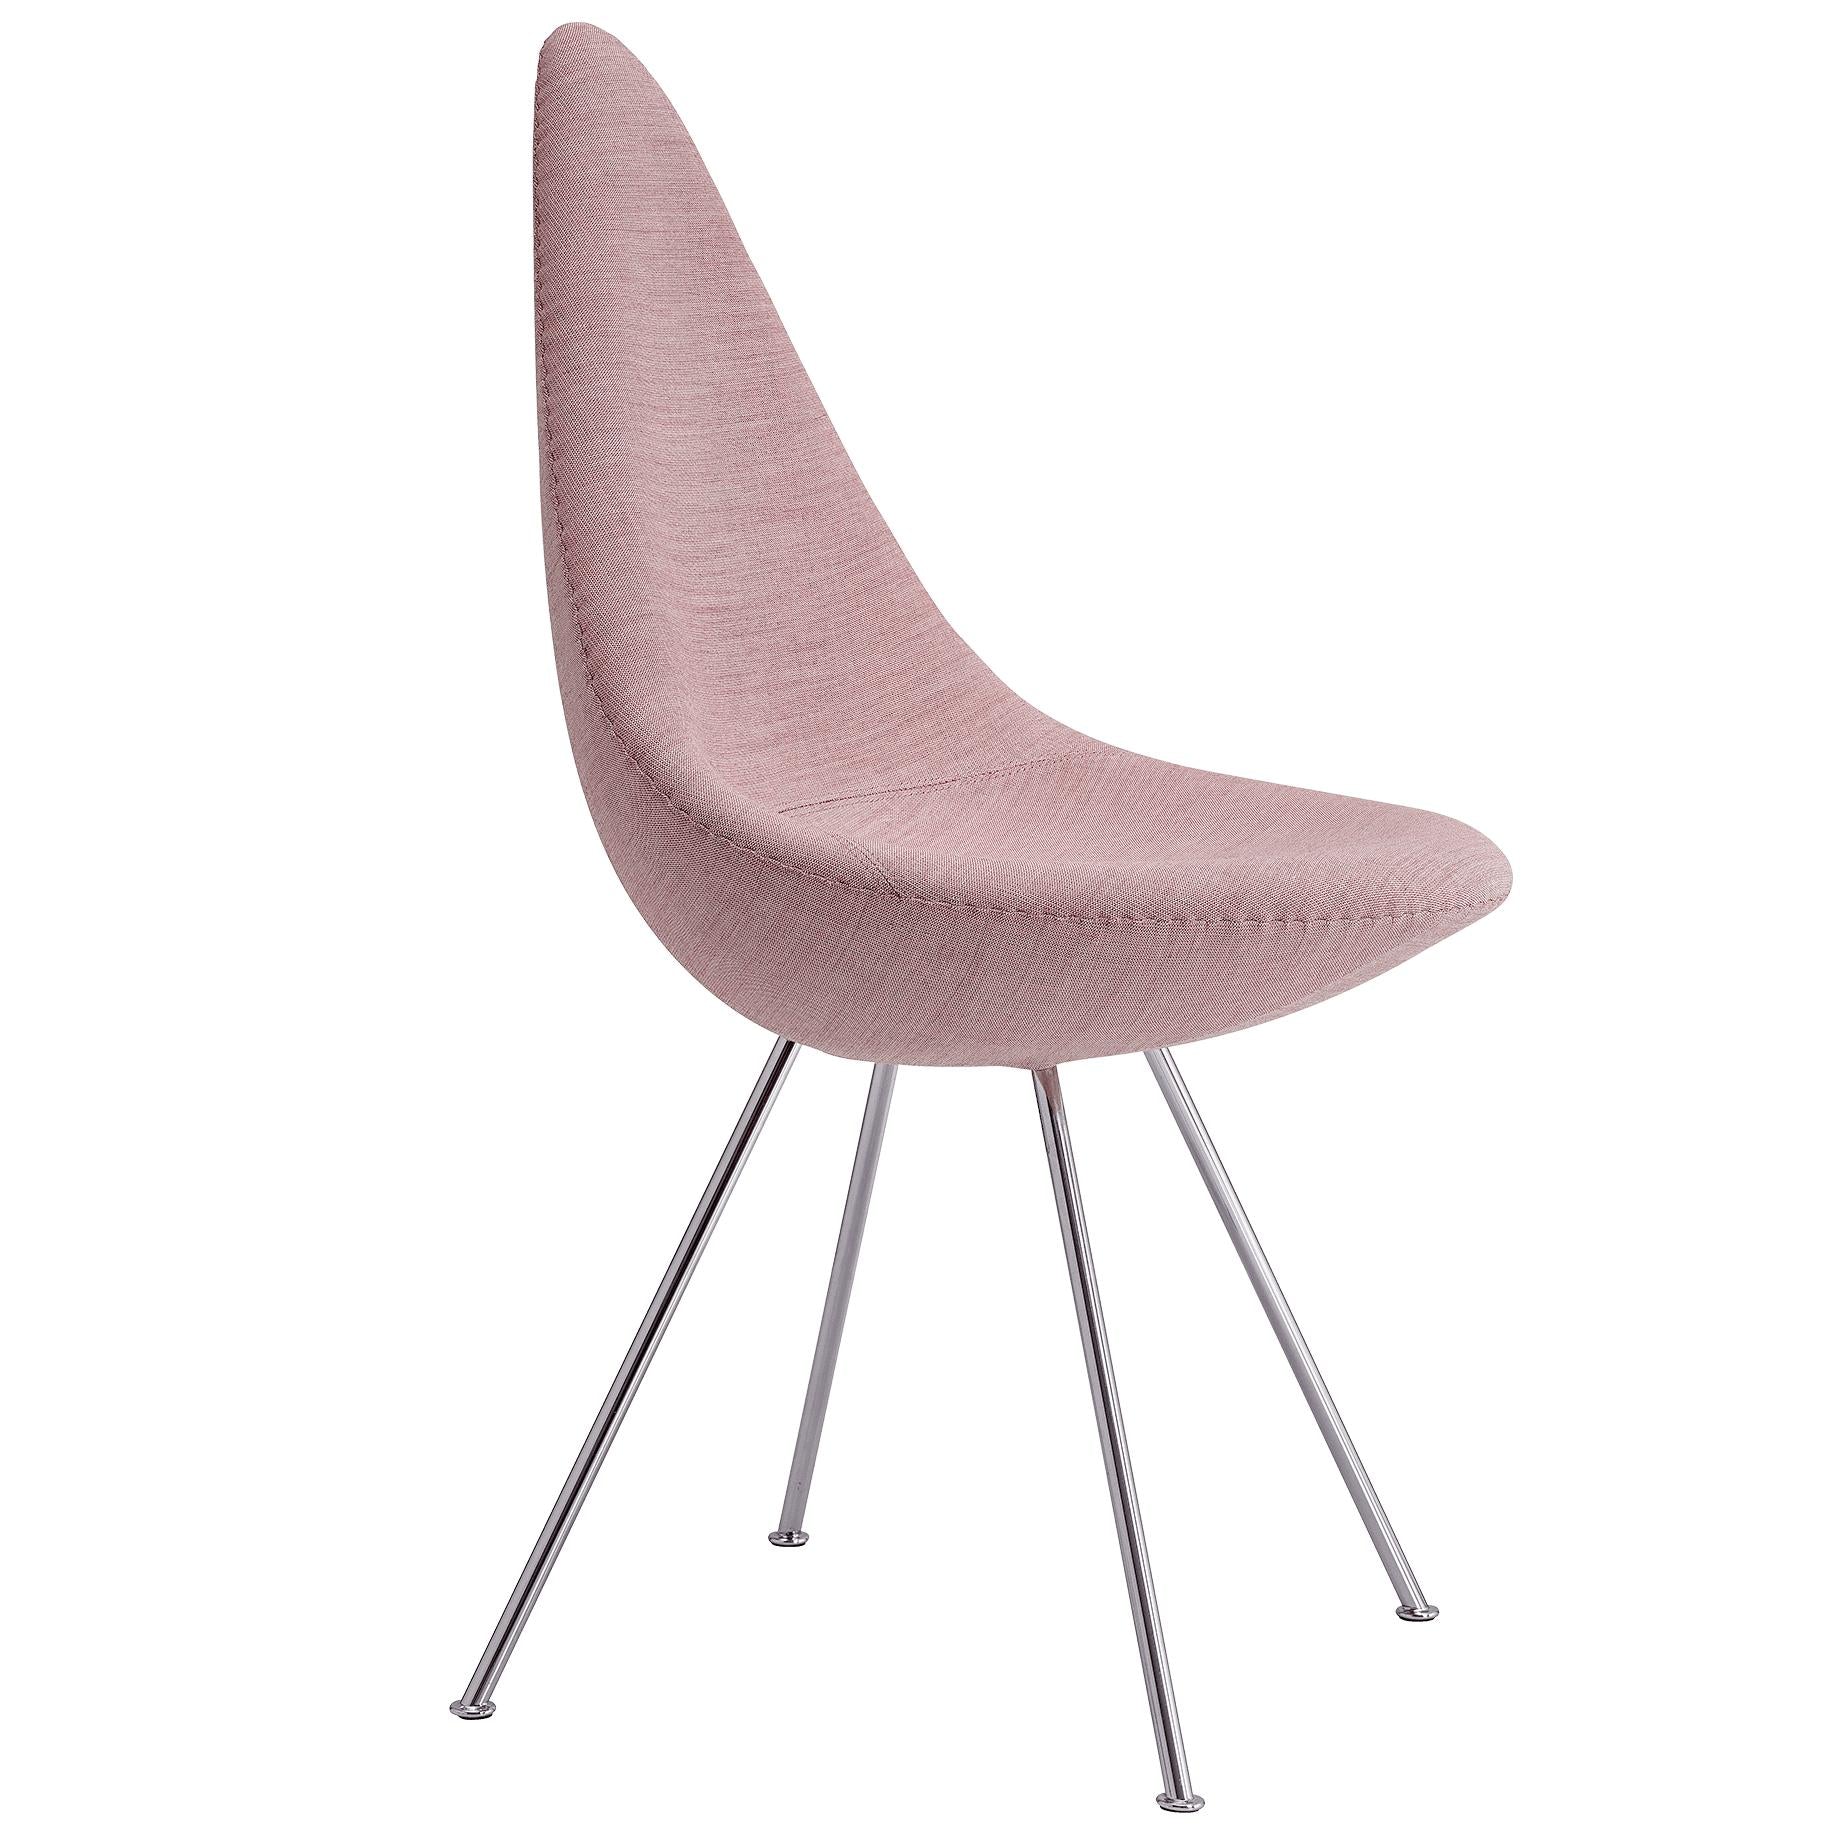 Fritz Hansen La chaise de chaise en tissu d'ameublement complet, toile rose pâle